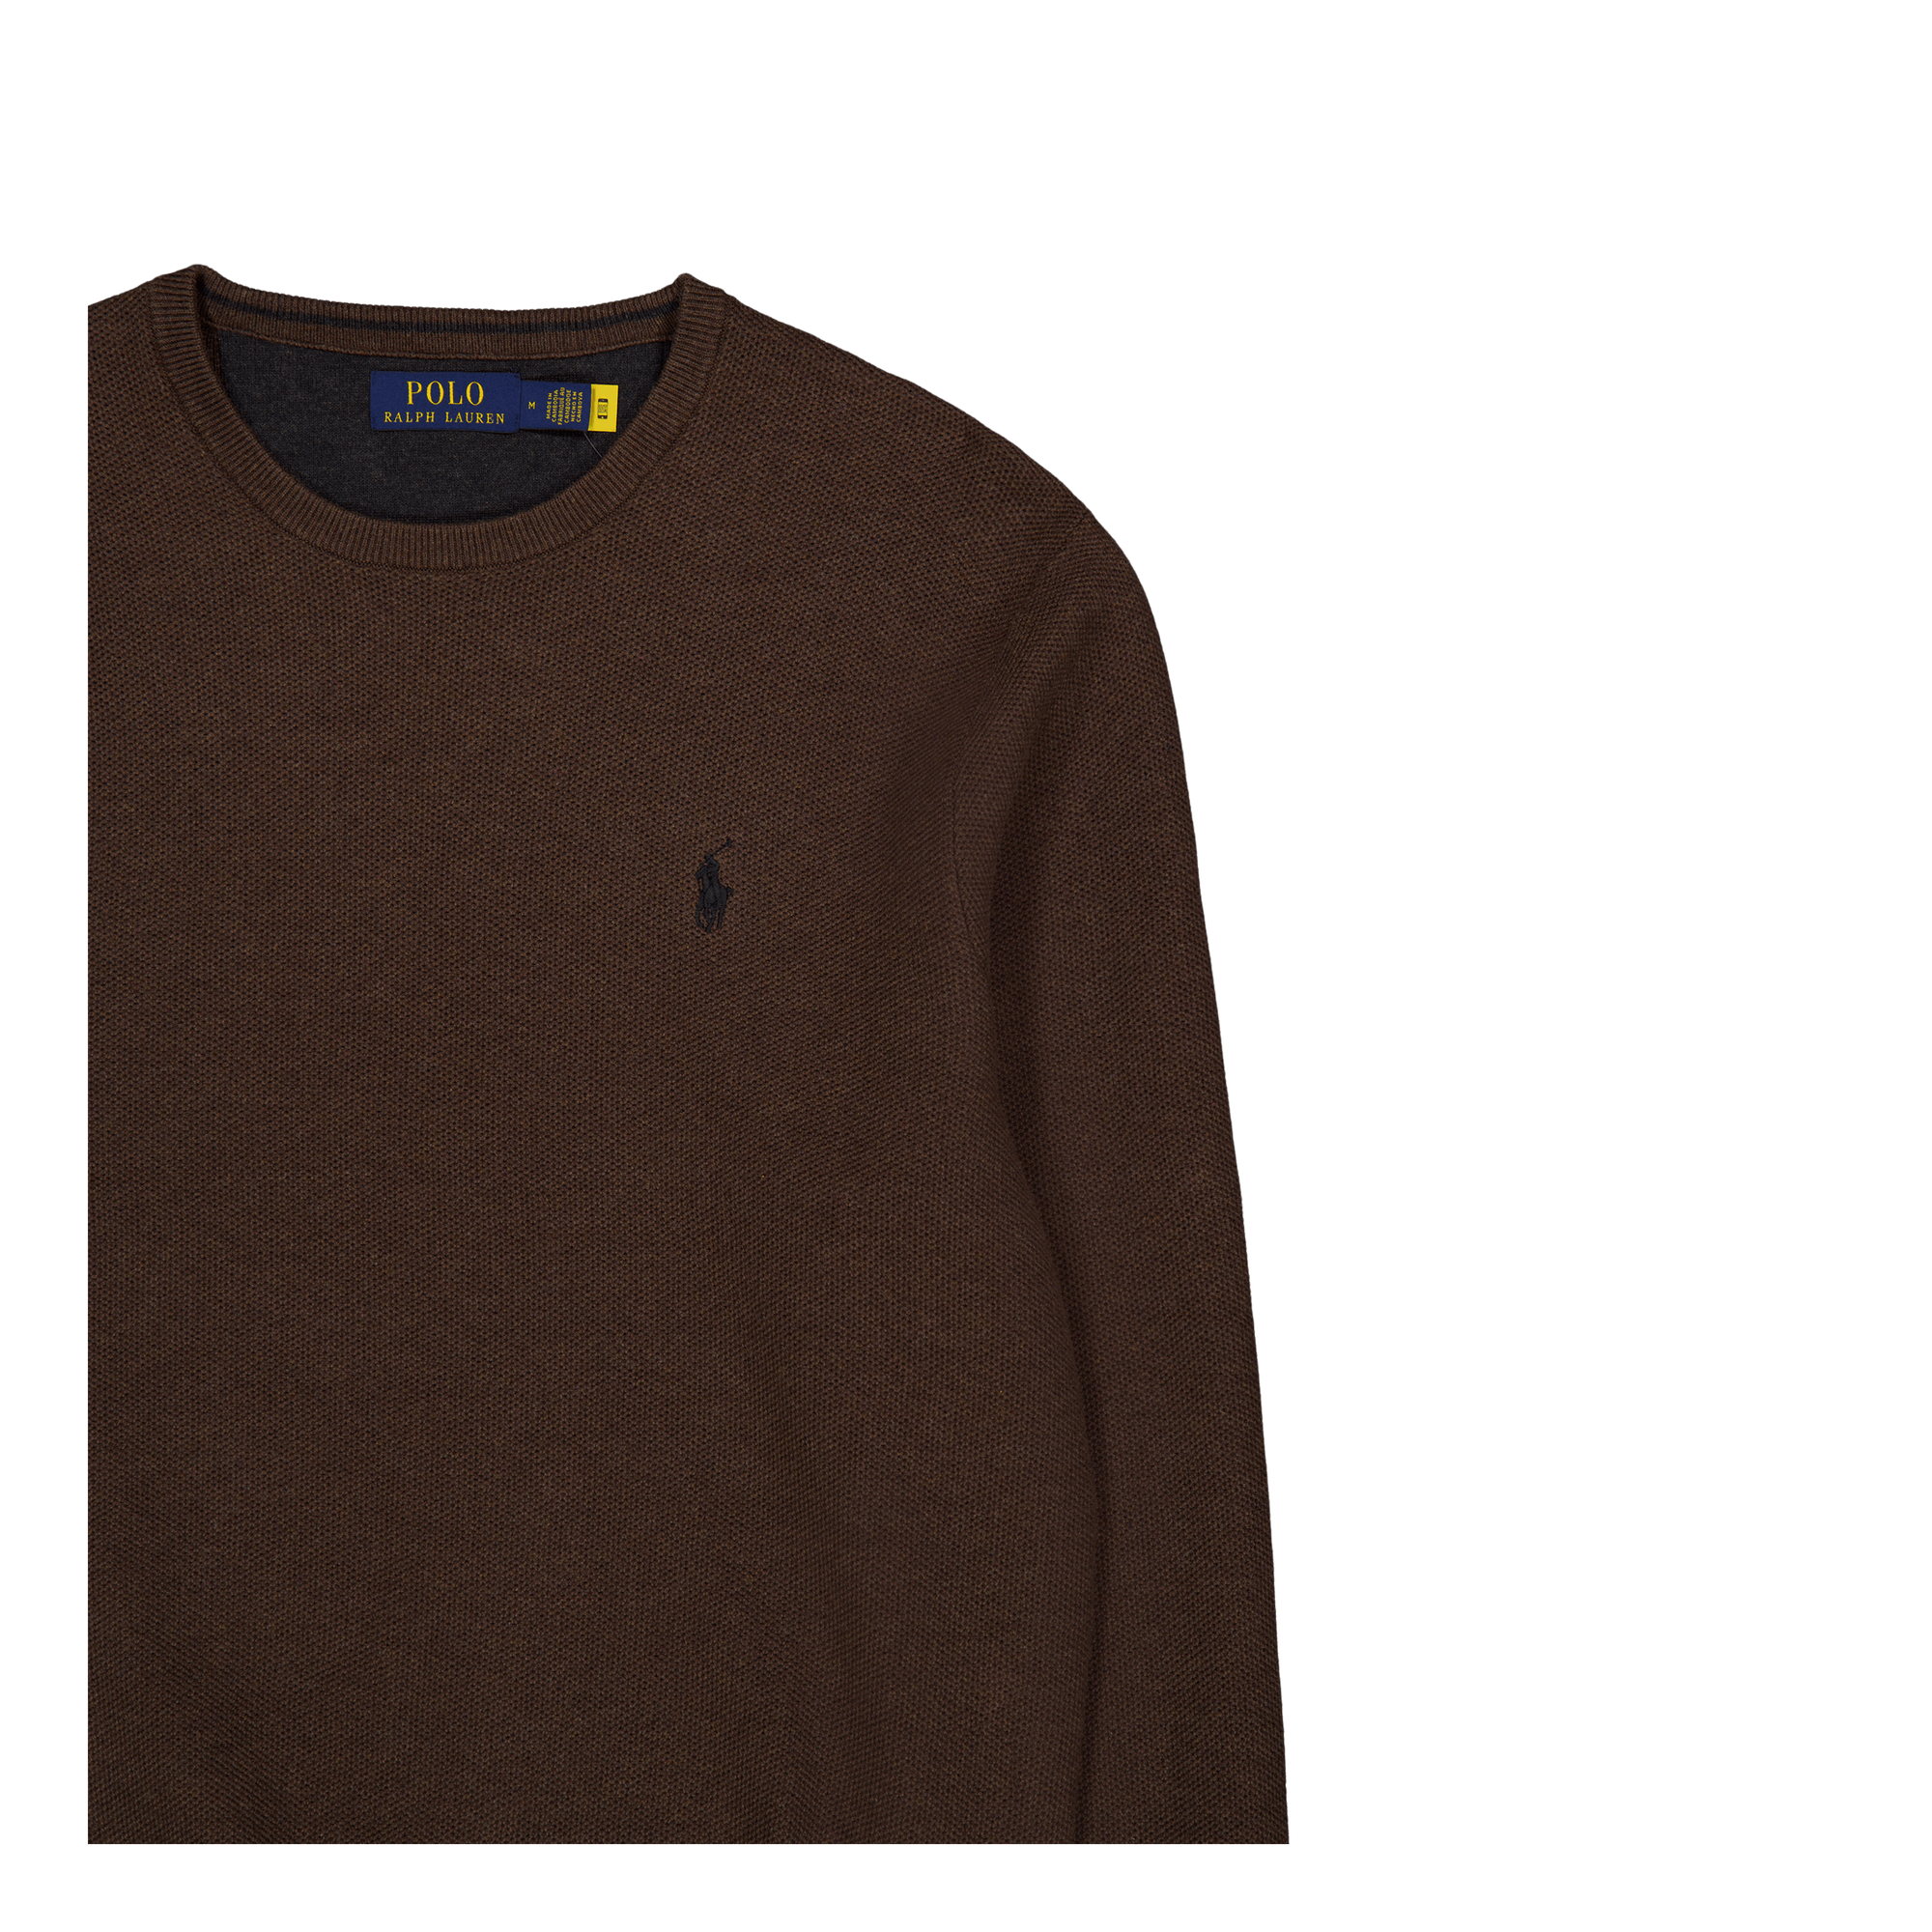 Textured Cotton Crewneck Sweater Spa Brown Hthr